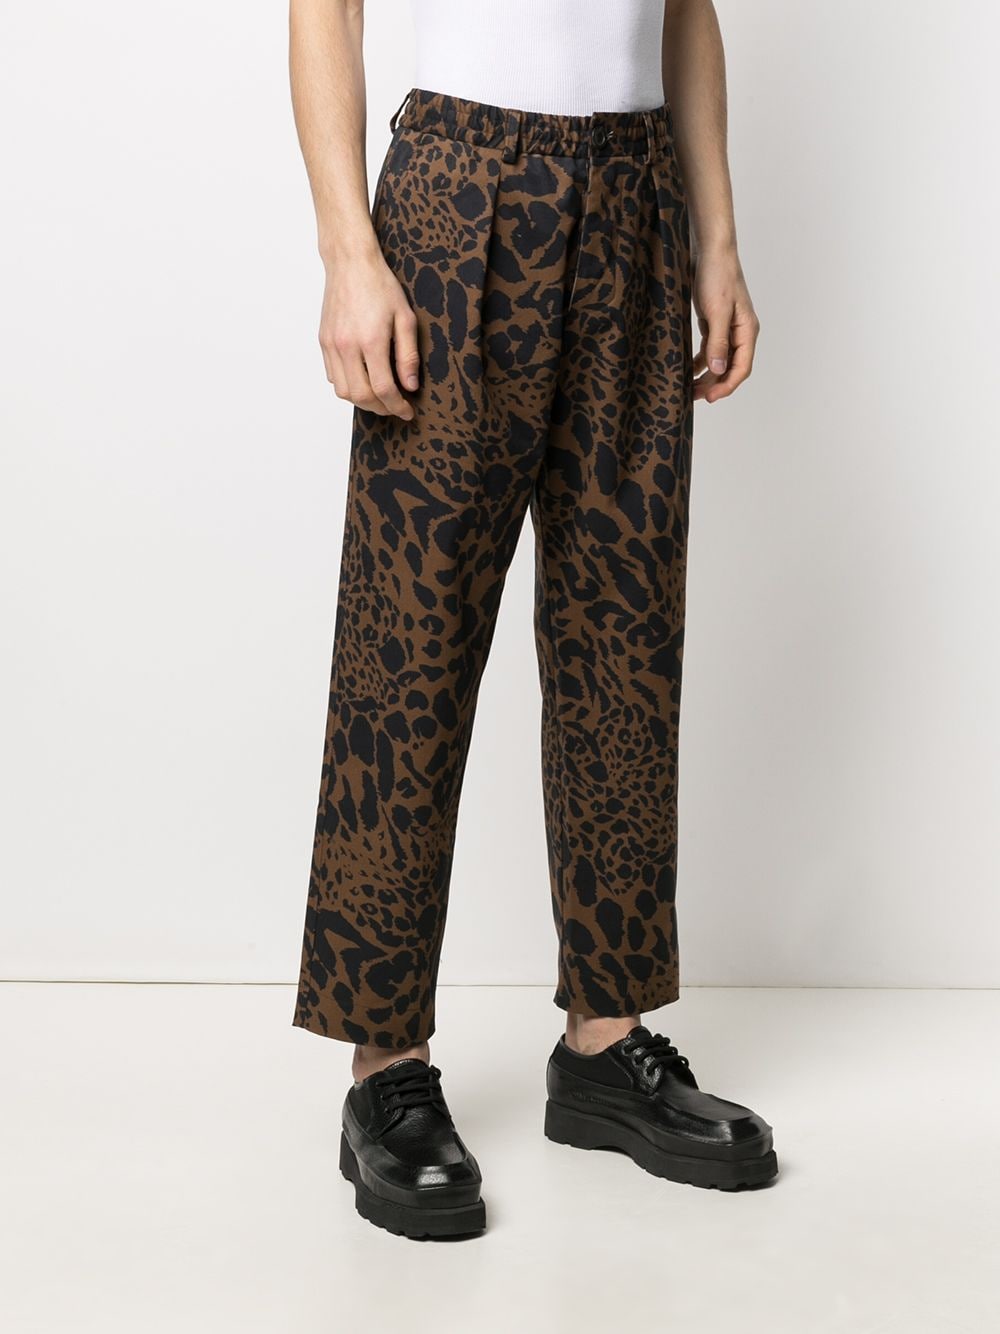 фото Pierre-louis mascia брюки с леопардовым принтом